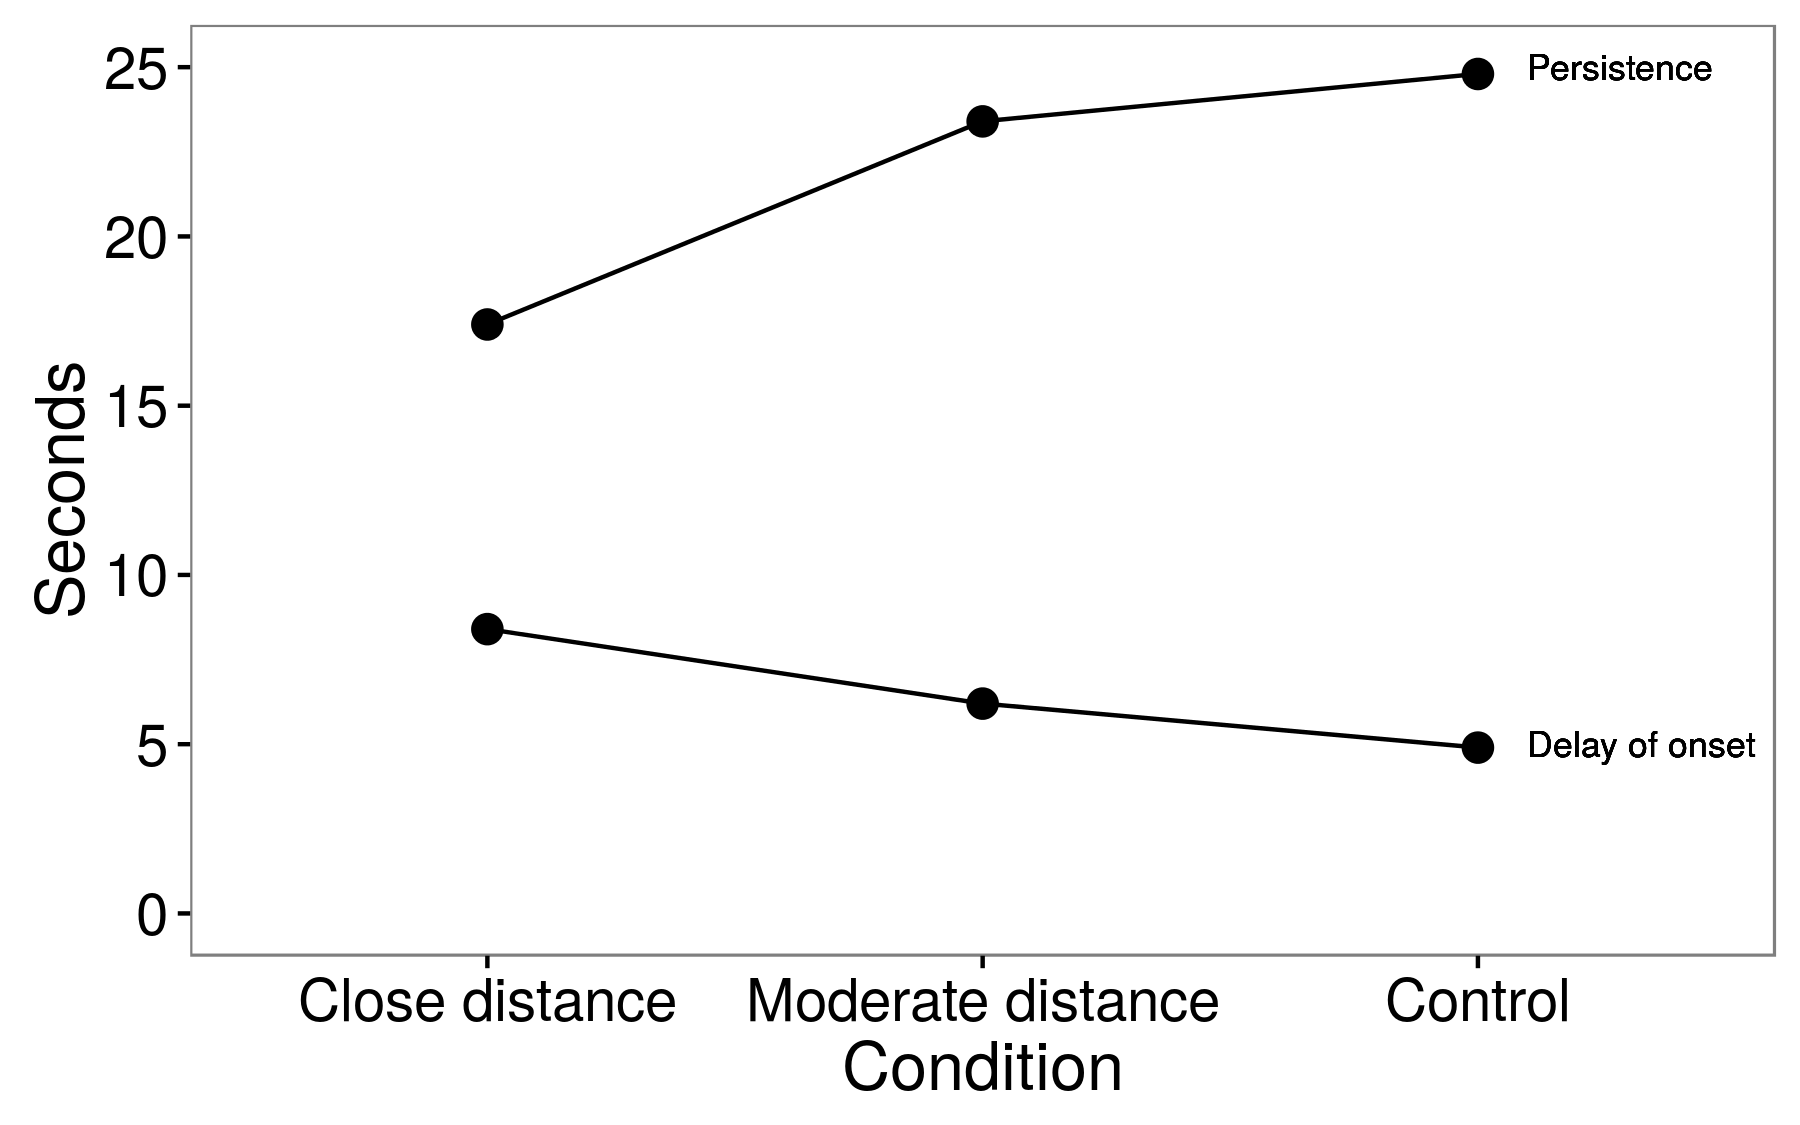 Figure 6.7: మిడిమిడిస్ట్, నోలెస్, మరియు మేటర్ (1976) నుండి ఫలితాలు. బాత్రూమ్లోకి ప్రవేశించిన పురుషులు మూడు పరిస్థితుల్లో ఒకదానికి కేటాయించారు: దగ్గరి దూరం (ఒక కాన్ఫెడరేట్ వెంటనే ప్రక్కనే ఉన్న మూత్రంలో ఉంచబడింది), ఆధునిక దూరం (కాన్ఫెడరేట్ ఒక మూత్రం తొలగించబడింది) లేదా నియంత్రణ (ఏ కాన్ఫెడరేట్). ఒక టాయిలెట్ దుకాణంలో ఉంచిన ఒక పరిశీలకుడు ఆలస్యం ఆలస్యం మరియు నిరంతరతని గమనించడానికి మరియు సమయం కోసం అనుకూల నిర్మించిన పెర్సిస్కోప్ను ఉపయోగించారు. అంచనాల చుట్టూ ప్రామాణిక లోపాలు అందుబాటులో లేవు. మిడిమిడిస్ట్, నోలెస్, మరియు మేటర్ (1976), ఫిగర్ 1 నుండి స్వీకరించారు.